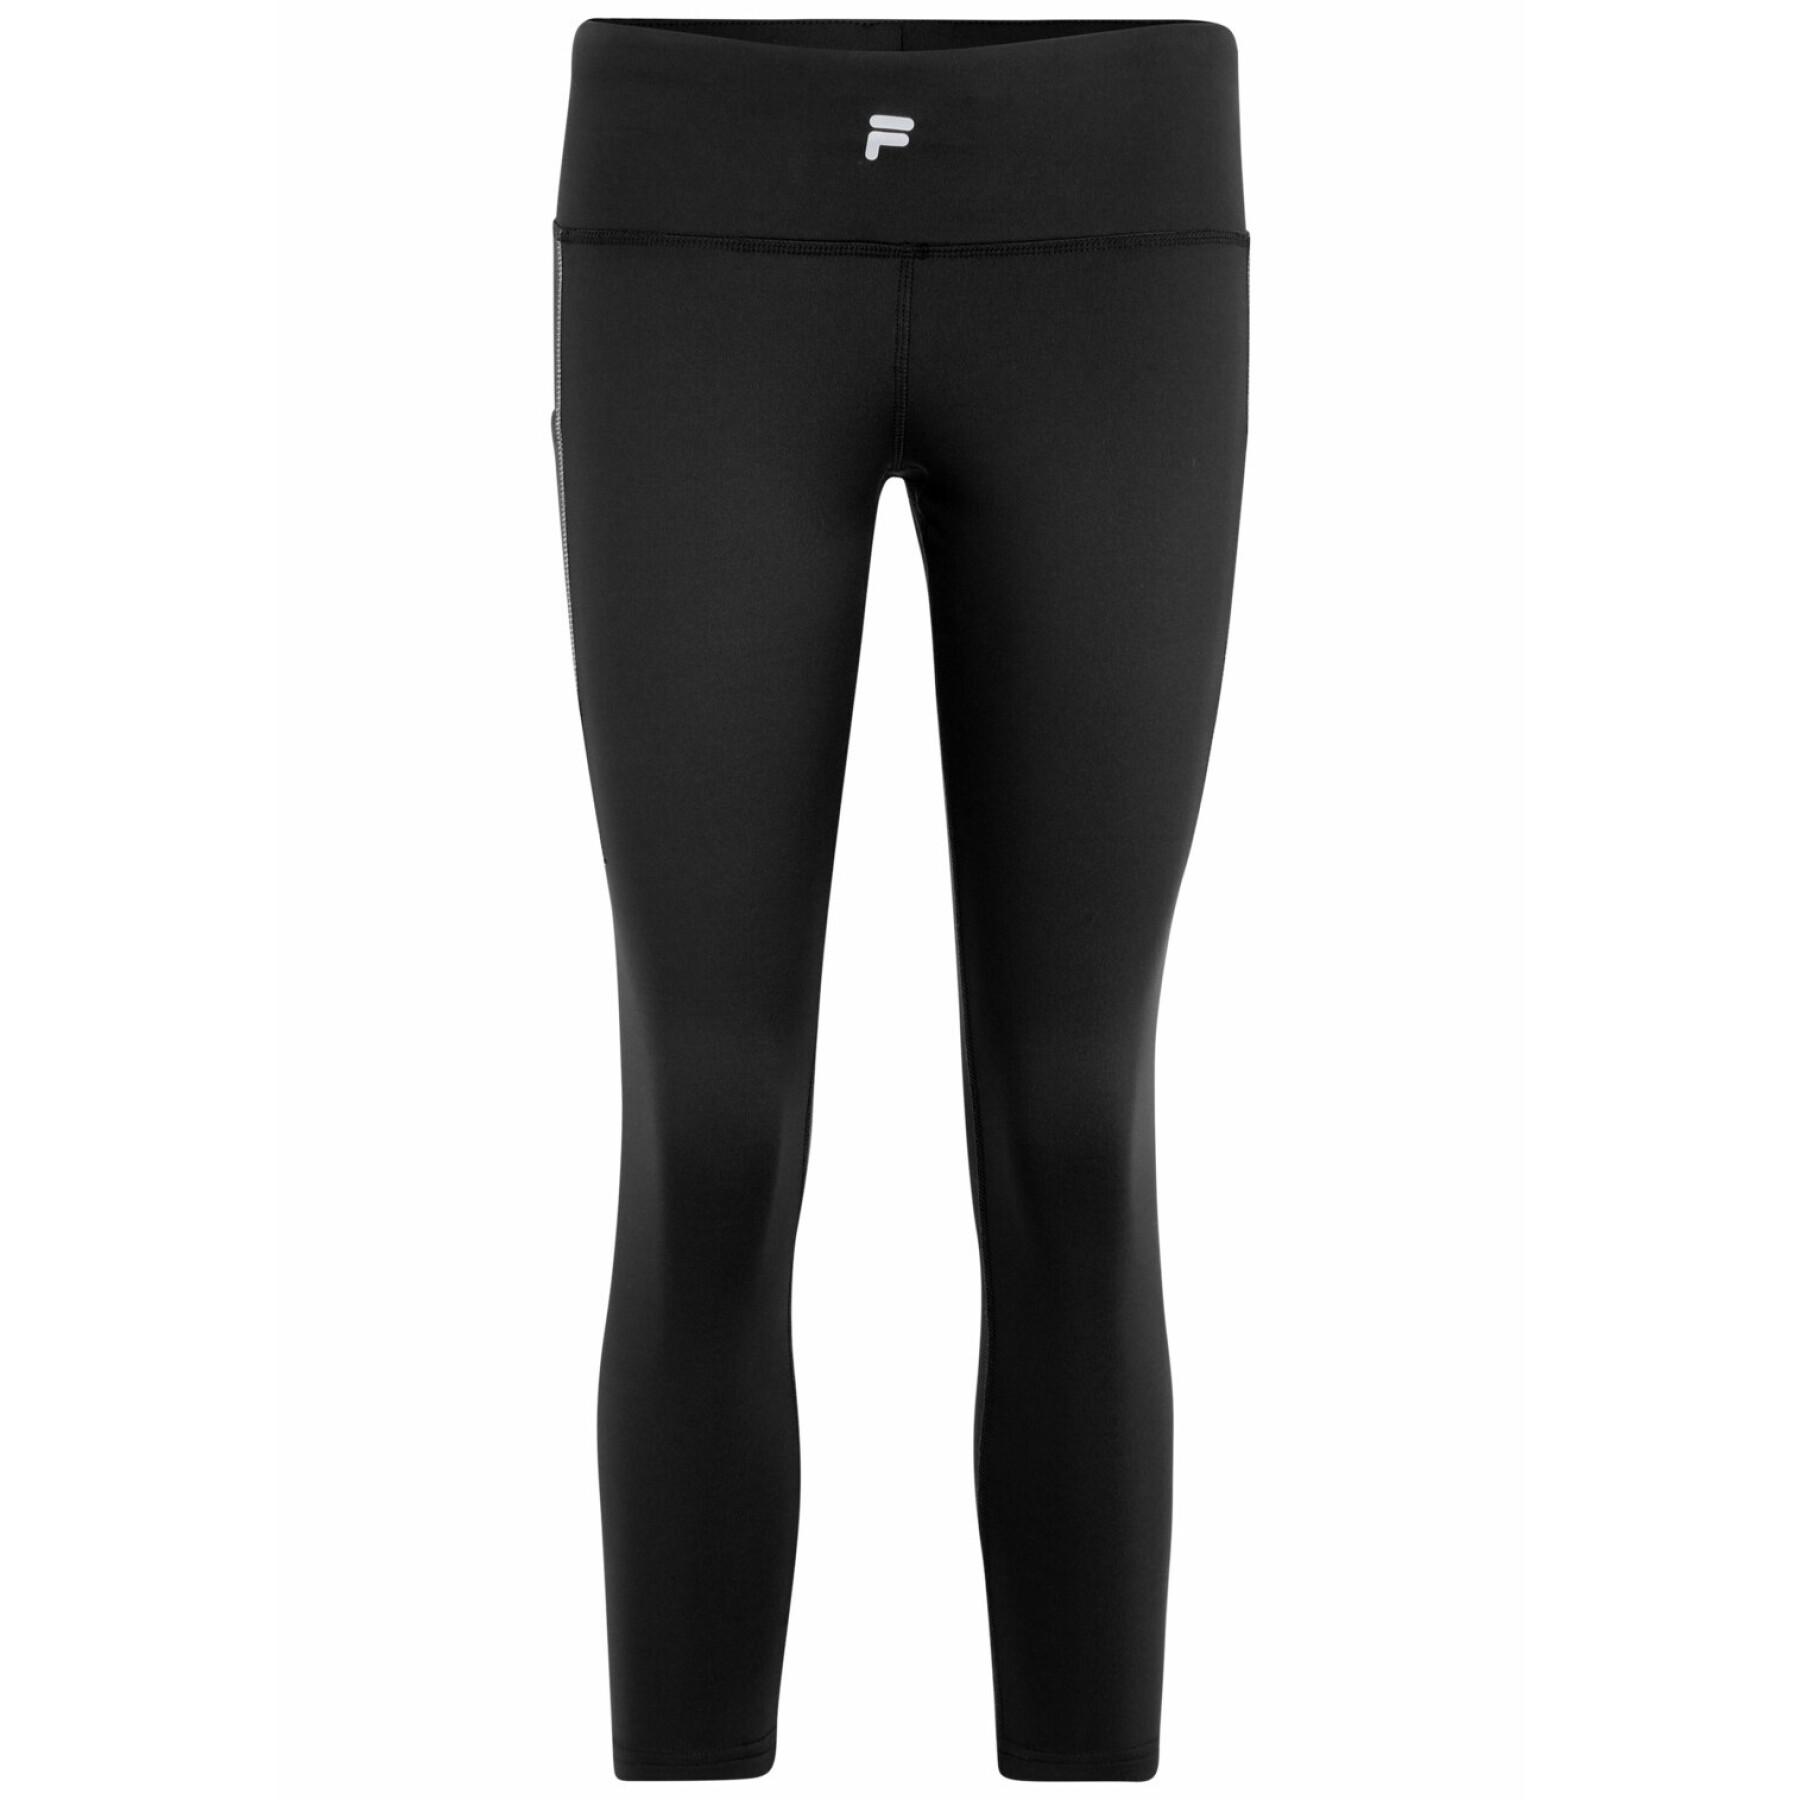 Women's leggings Fila Rockledge Running - Brands - Lifestyle